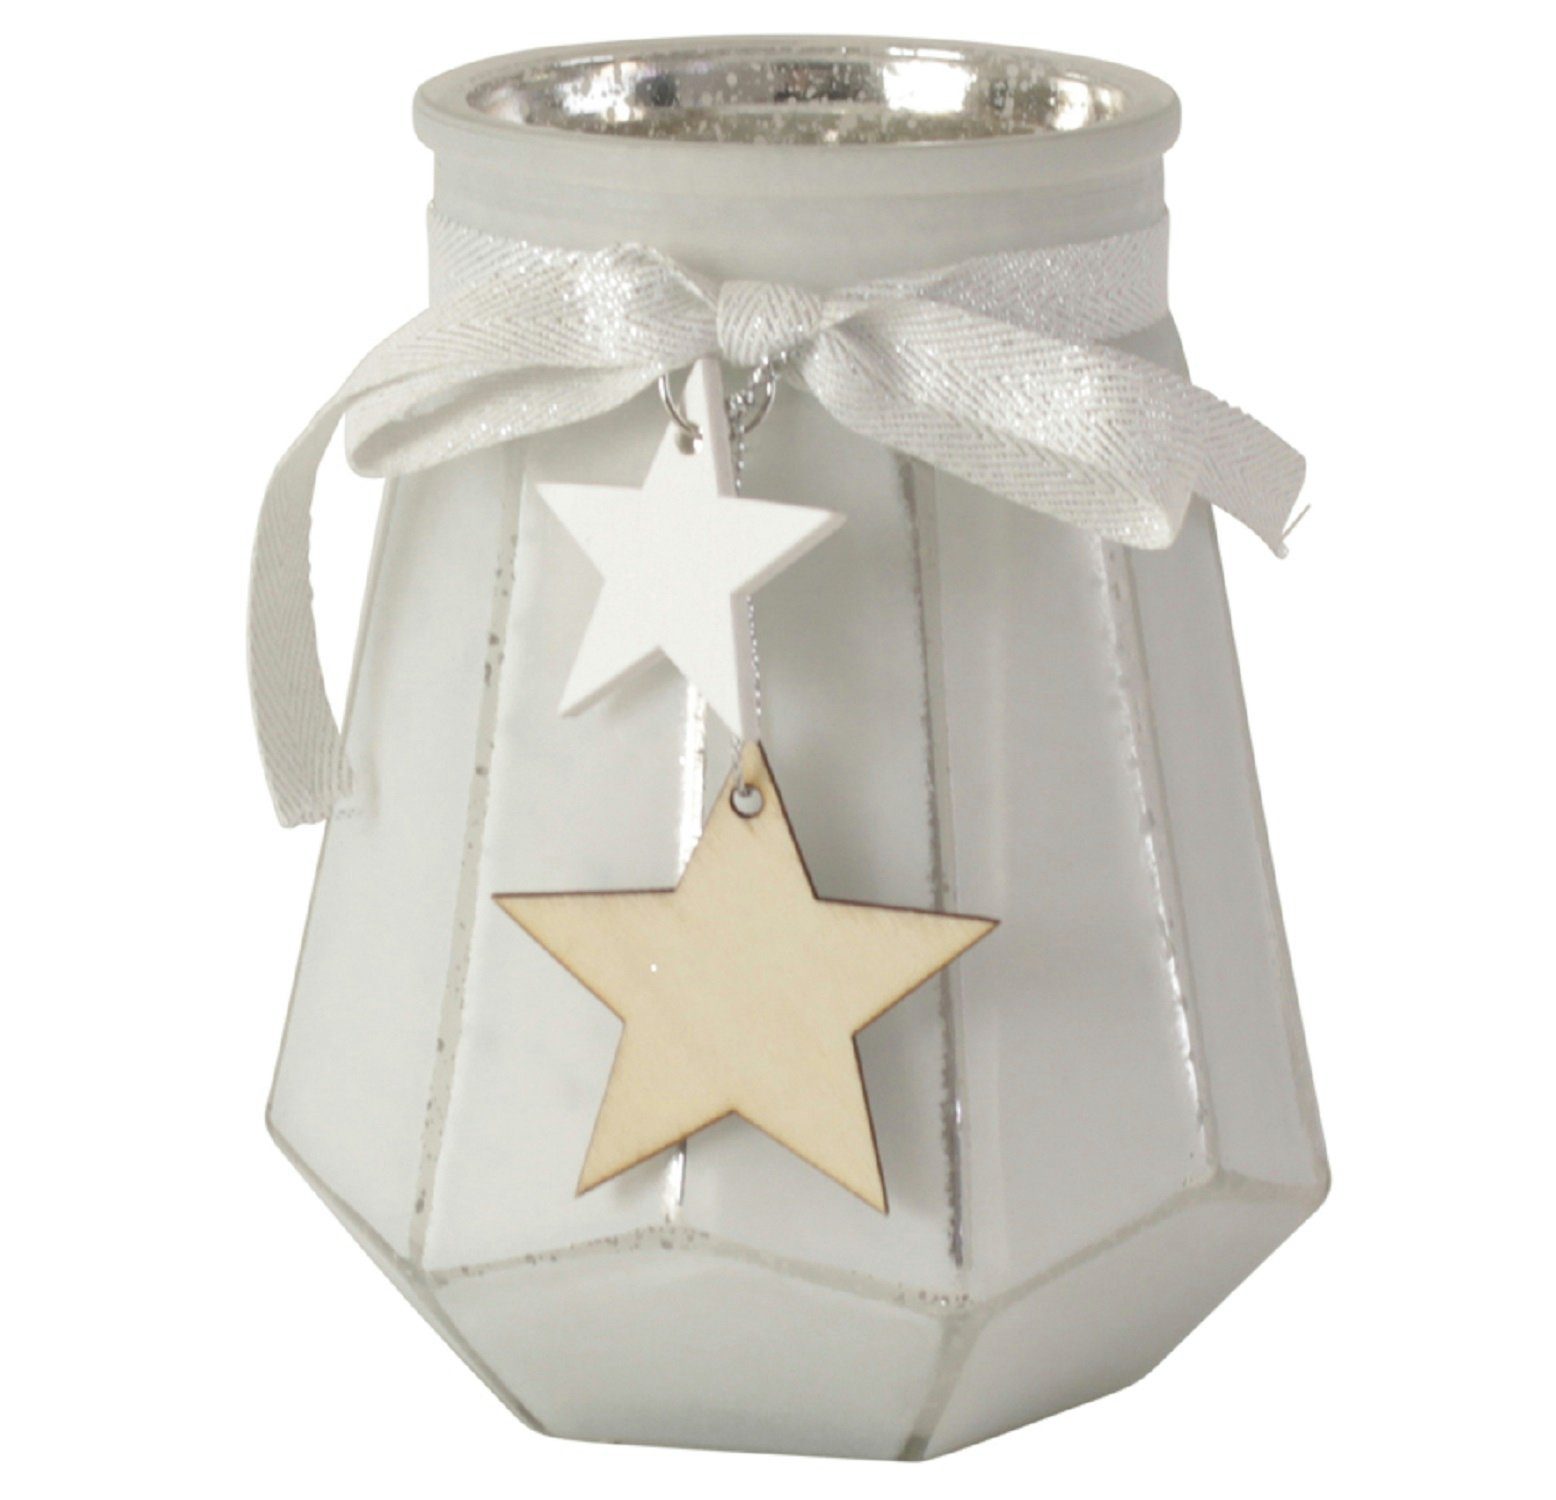 Werner Voß Teelichthalter Wind Teelicht Glas 13,5cm Halter weiß silber Stern Kerze mit Anhänger (1 x Windlicht)